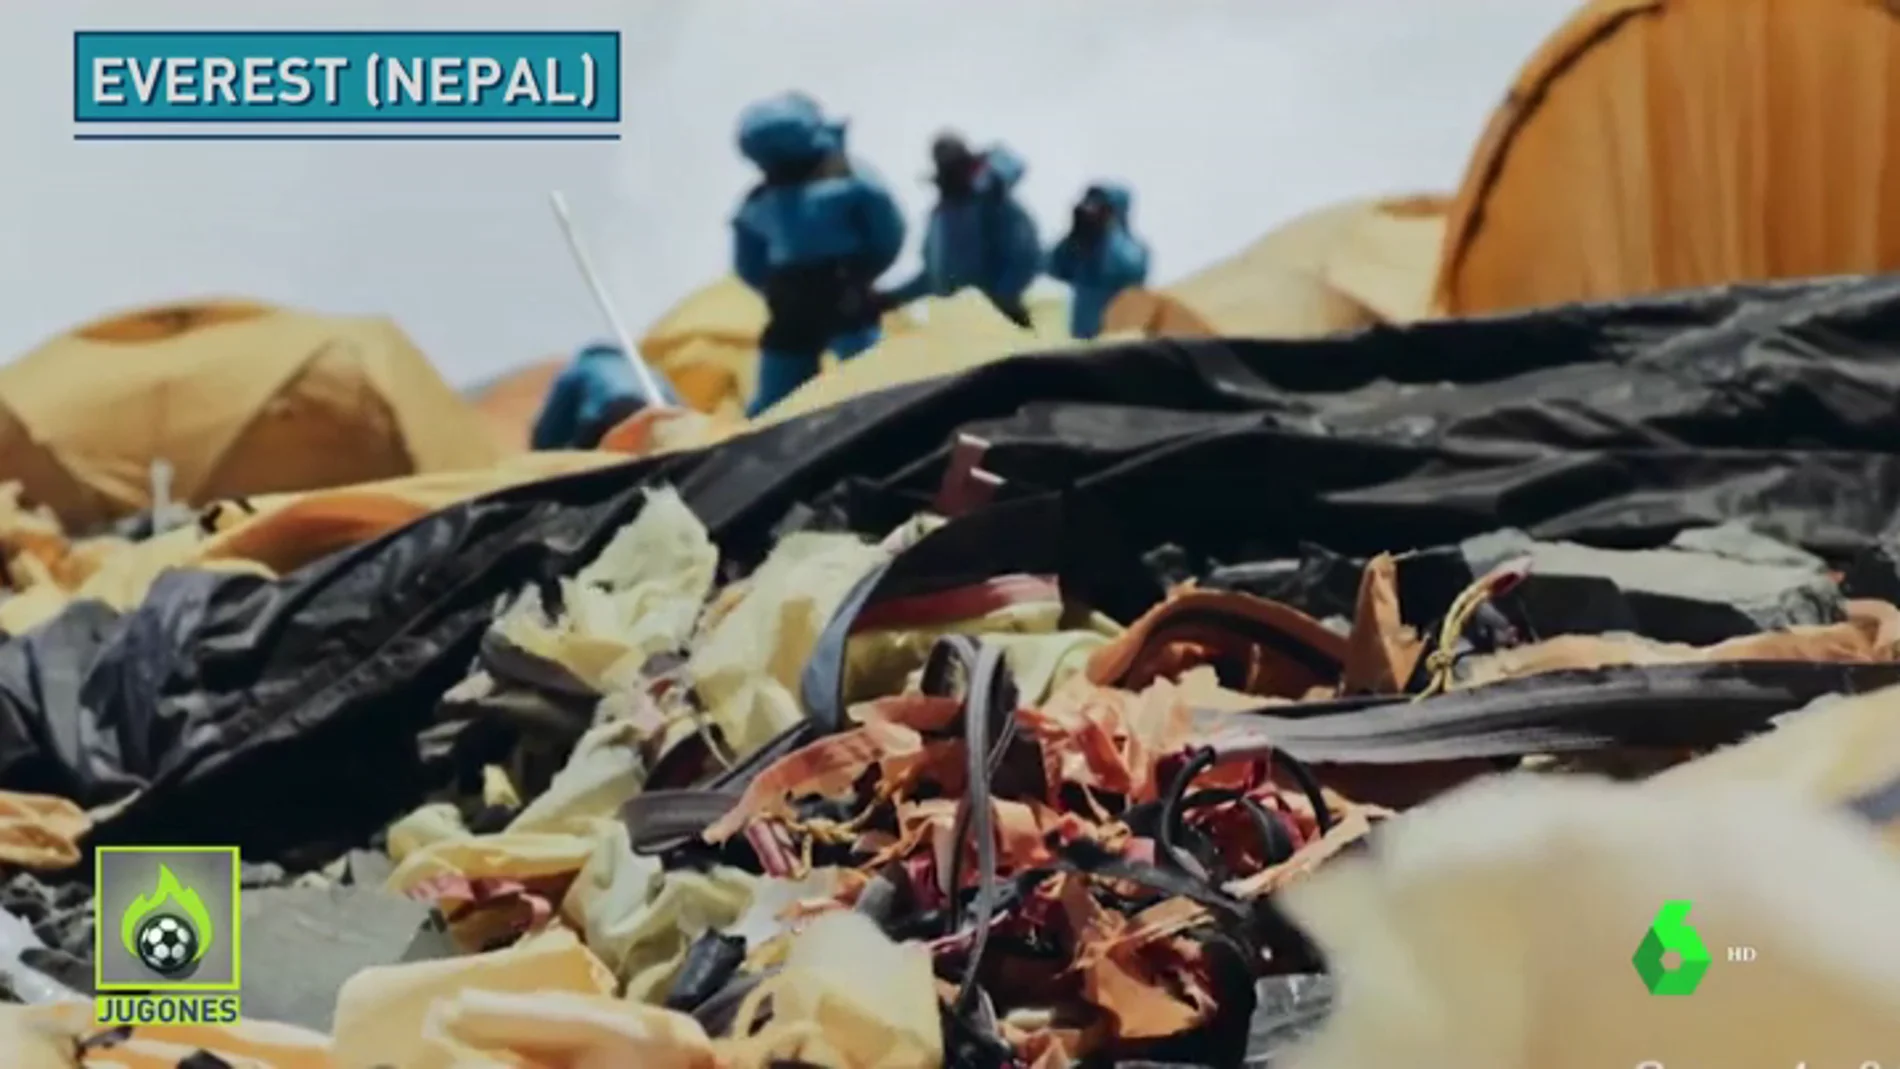 Escalan el Everest para limpiarlo y recogen 150 kilos de basura en un solo día